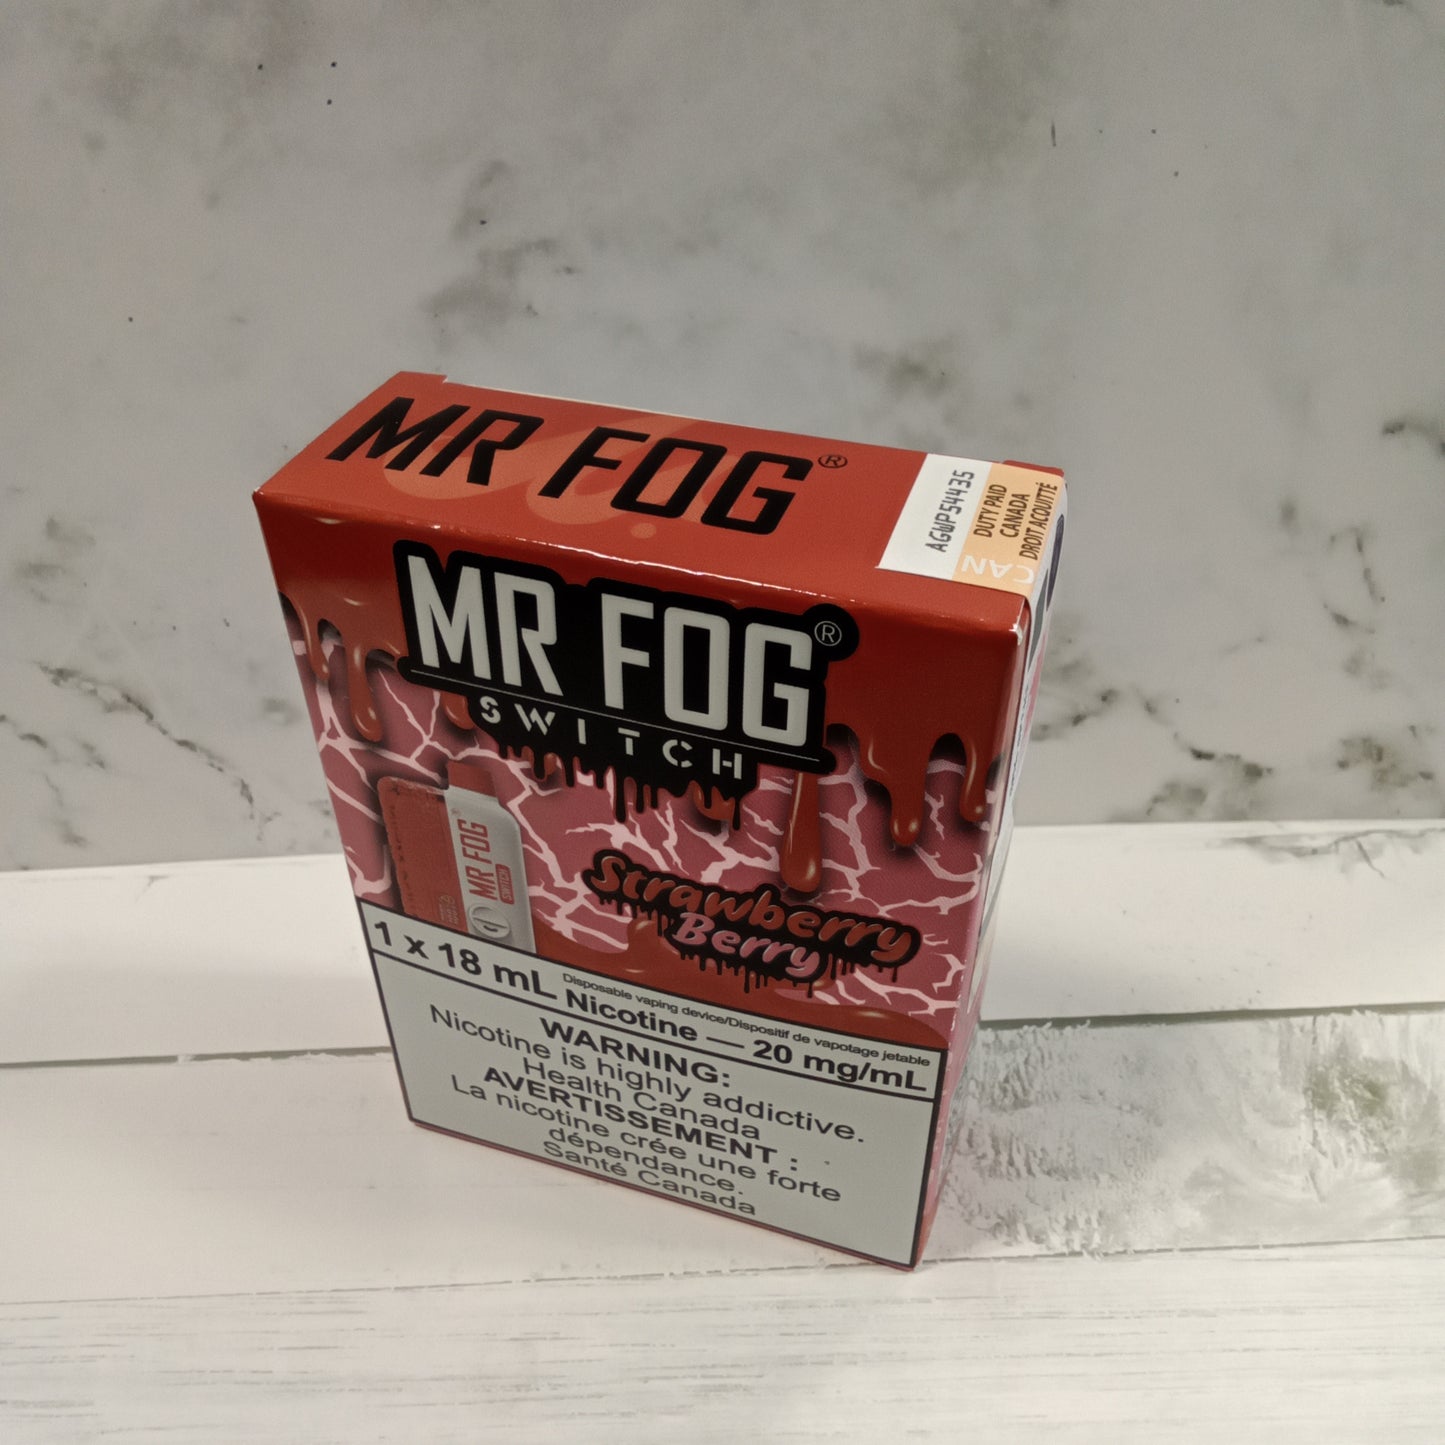 Mr fog switch 15000